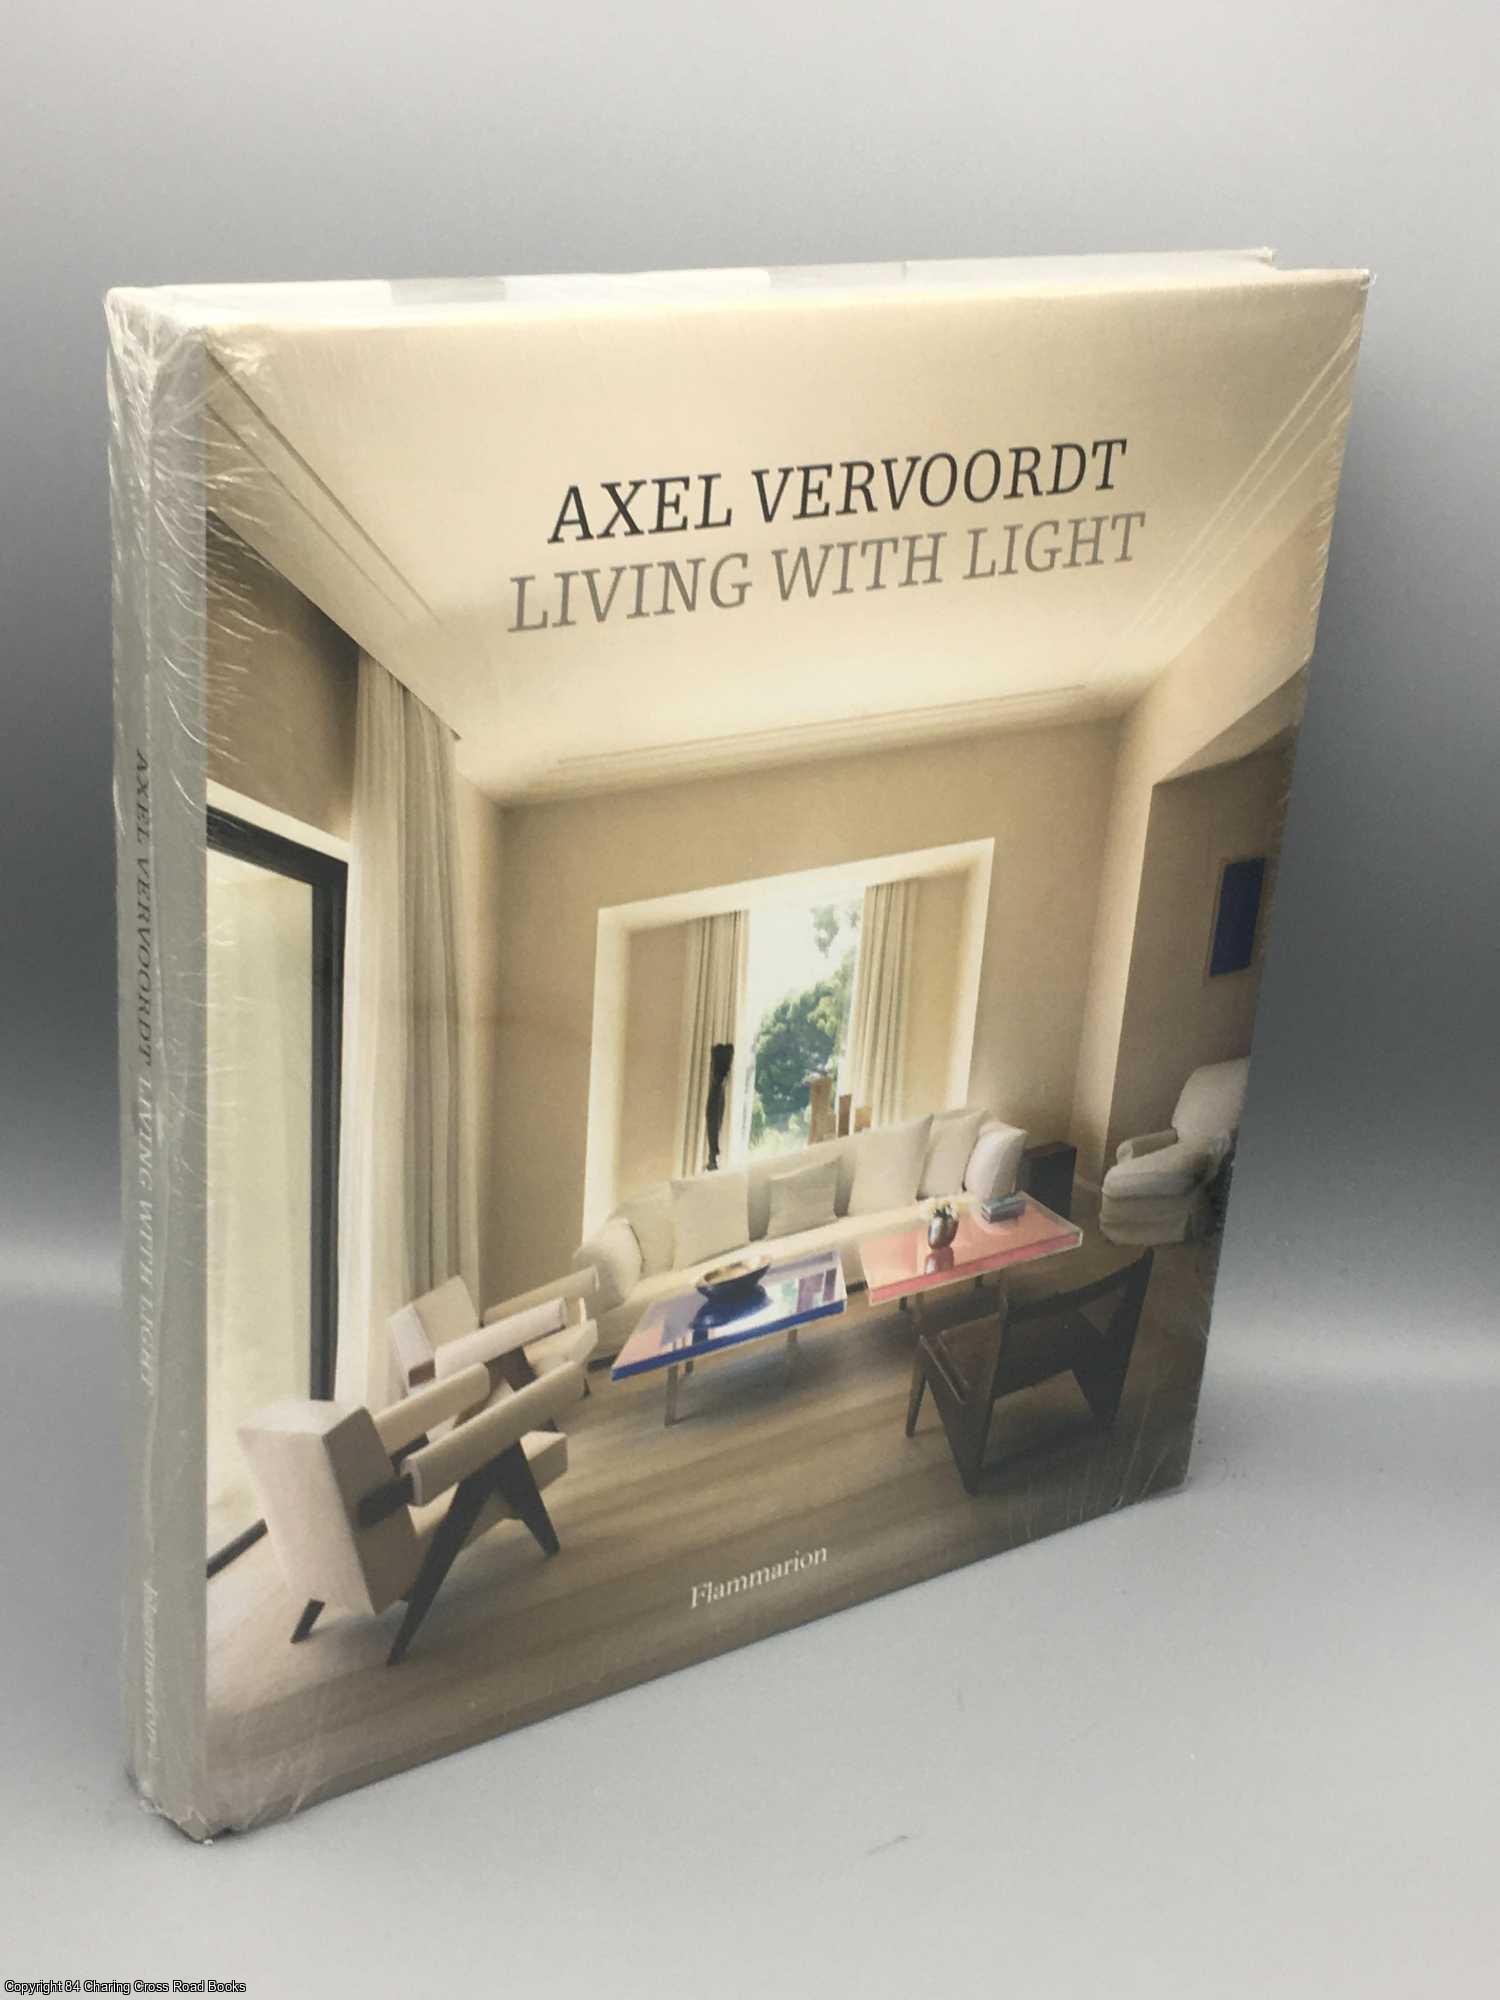 Vervoordt, Axel - Axel Vervoordt: Living with Light